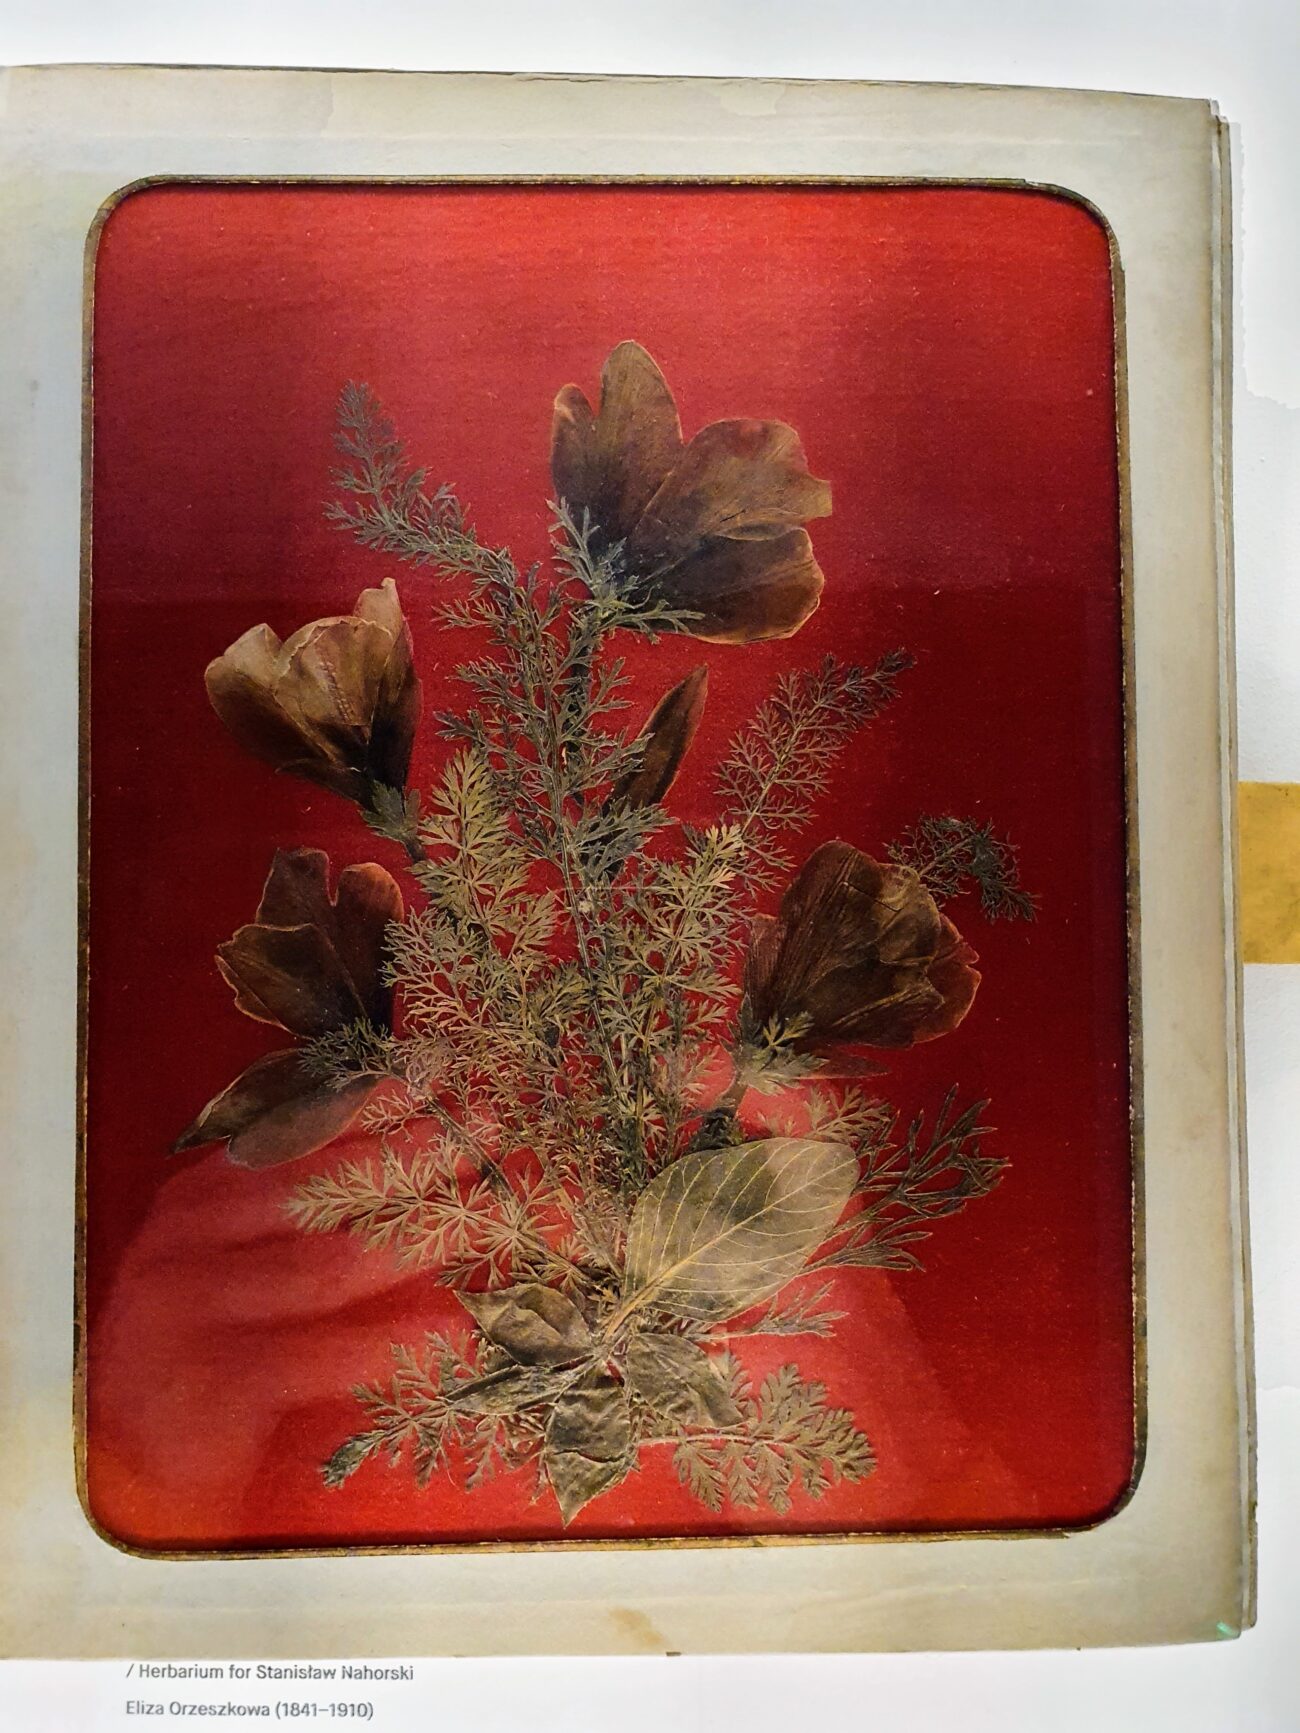 Kartka z albumu florystycznego Elizy Orzeszkowej. Na czerwonym tle wyklejony z zasuszonych kwiatów bukiet.